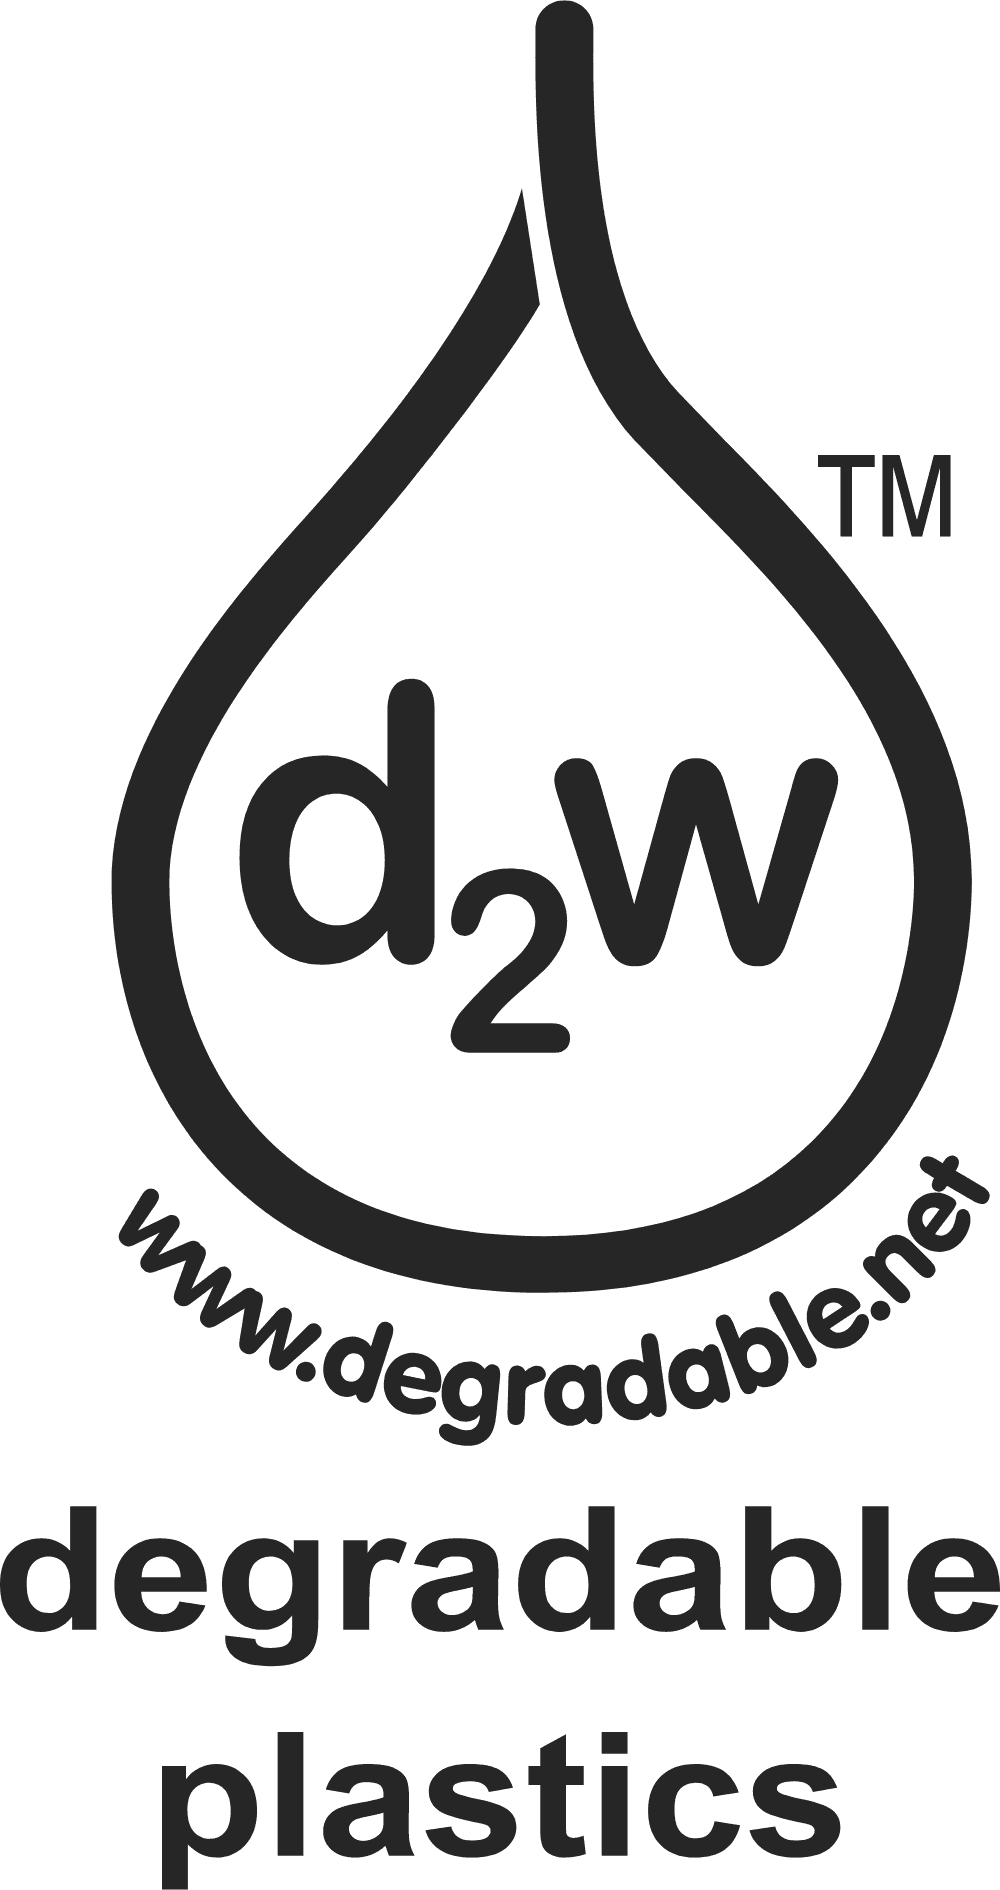 Degradable Plastics Logo download